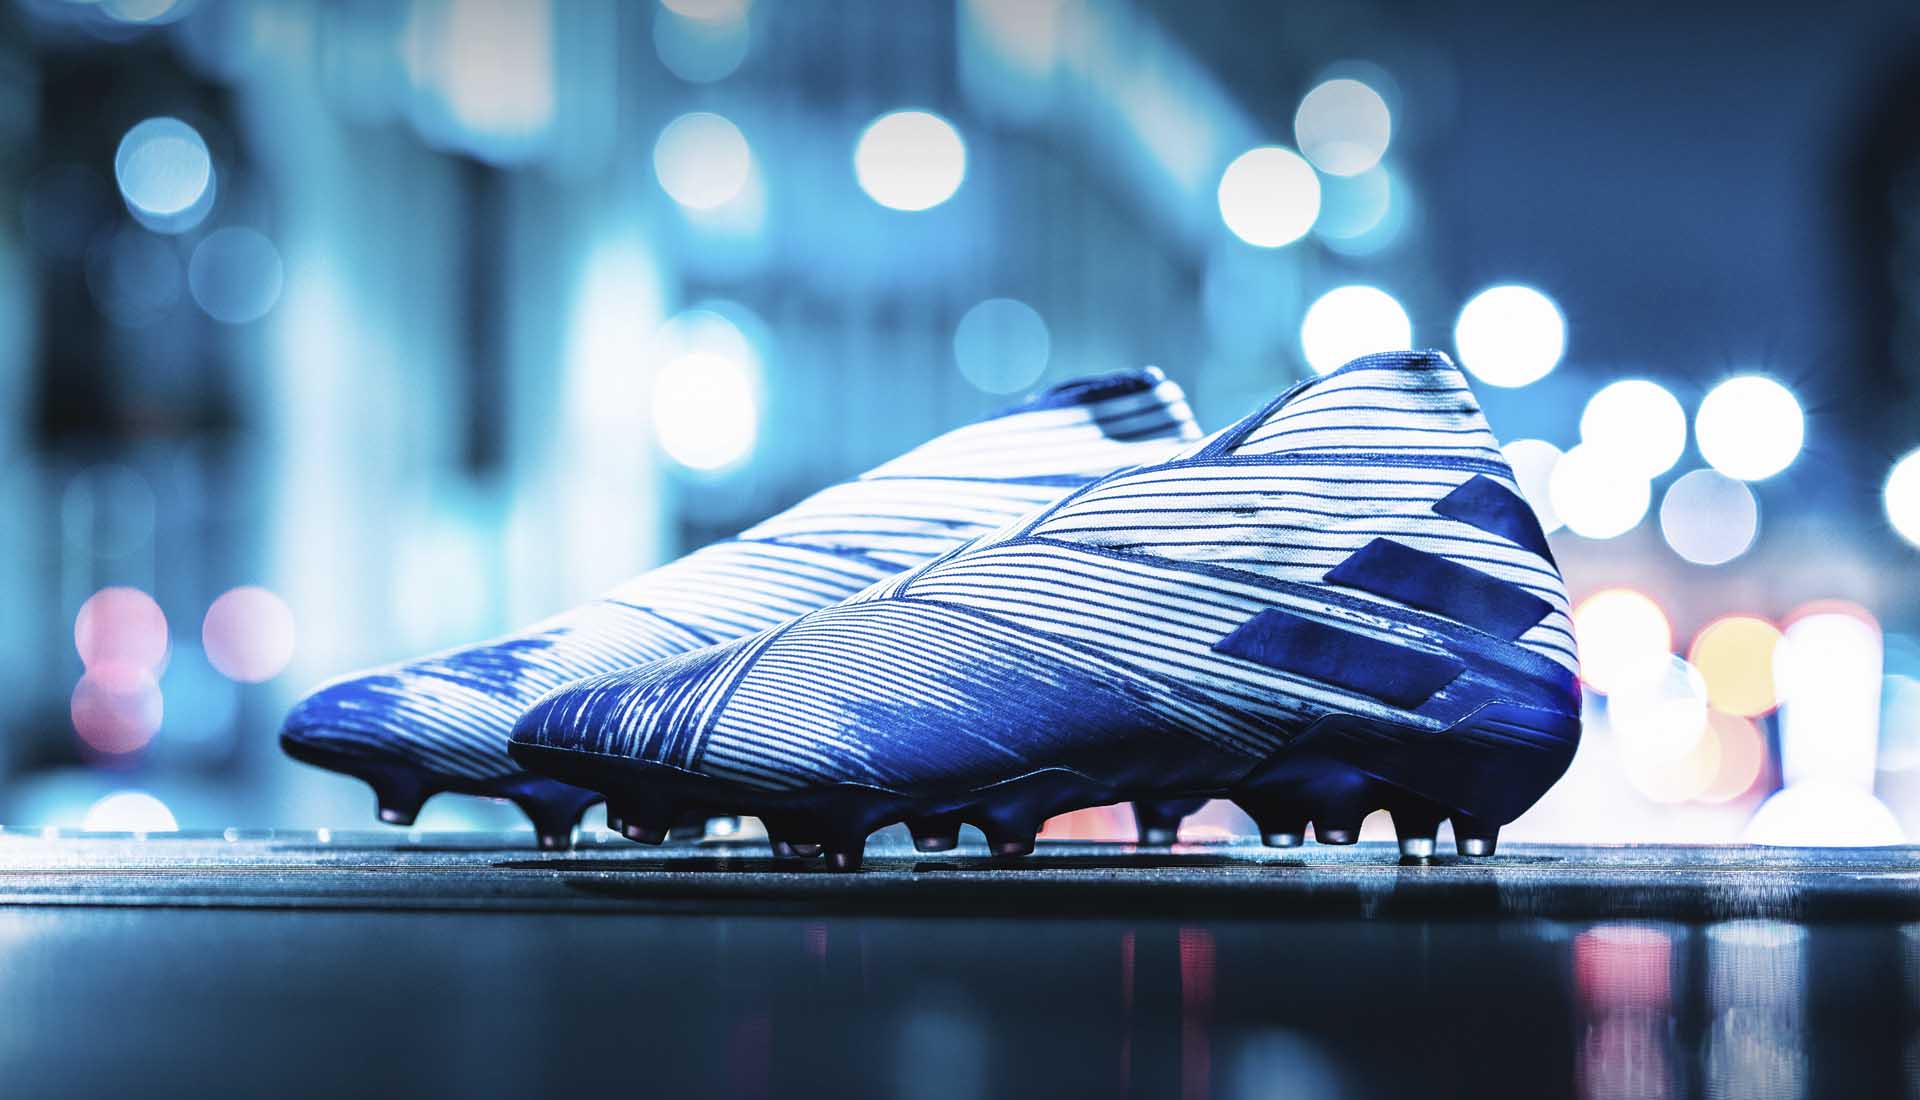 Adidas Nemeziz với thiết kế da vải ôm chân là dòng giày Messi sử dụng để thi đấu